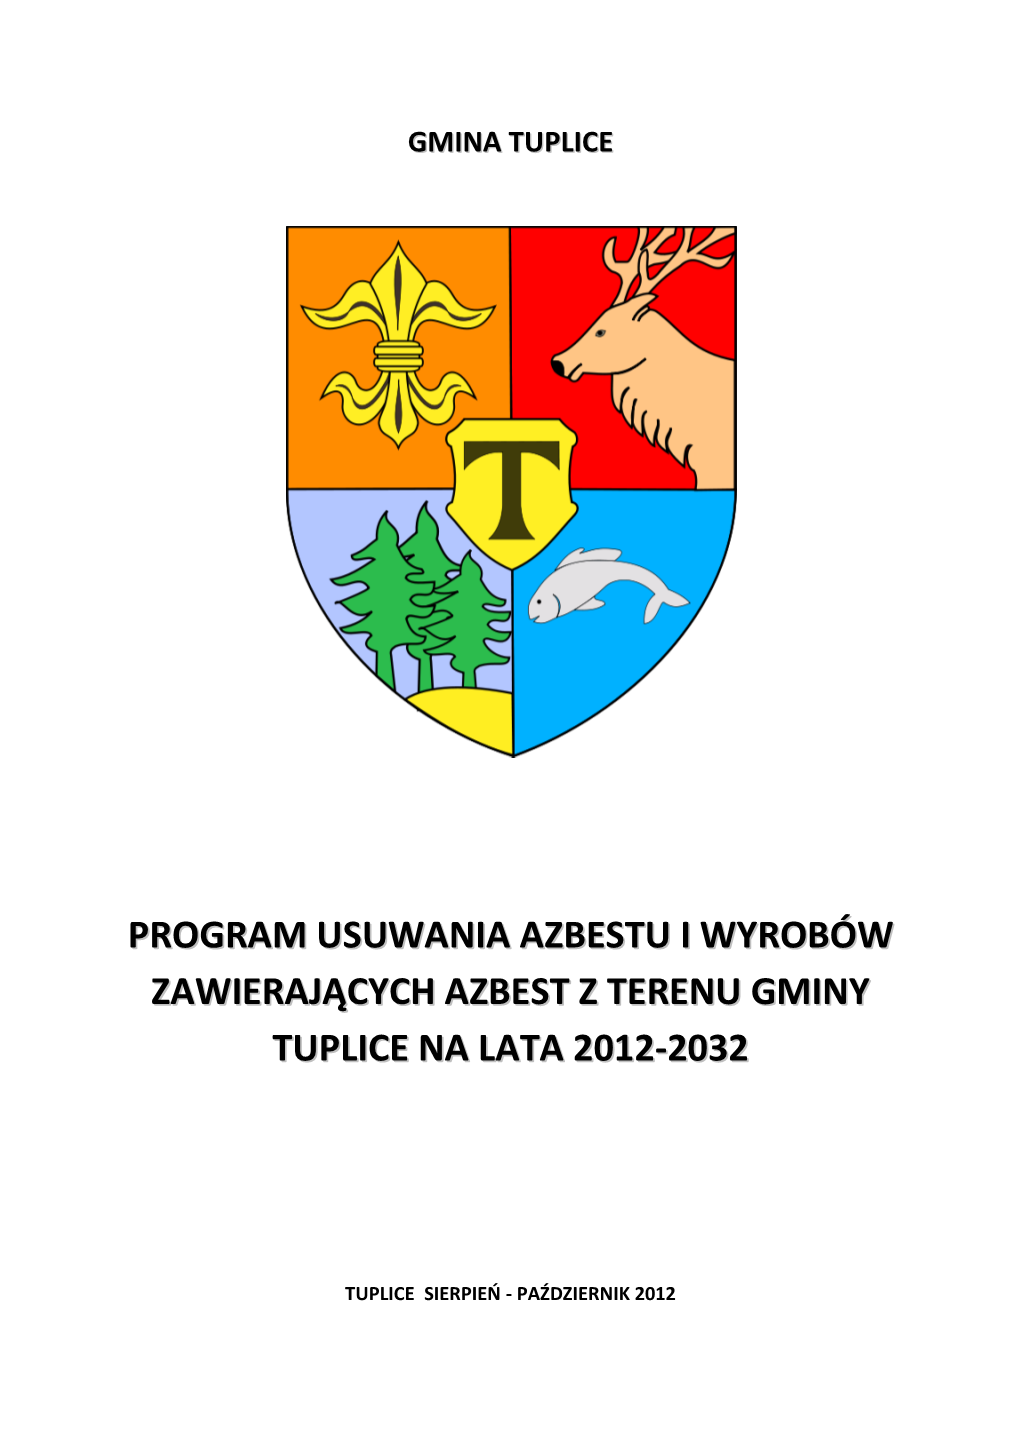 Program Usuwania Azbestu I Wyrobów Zawierających Azbest Z Terenu Ggminy Tuplice Na Llata 20112-2032